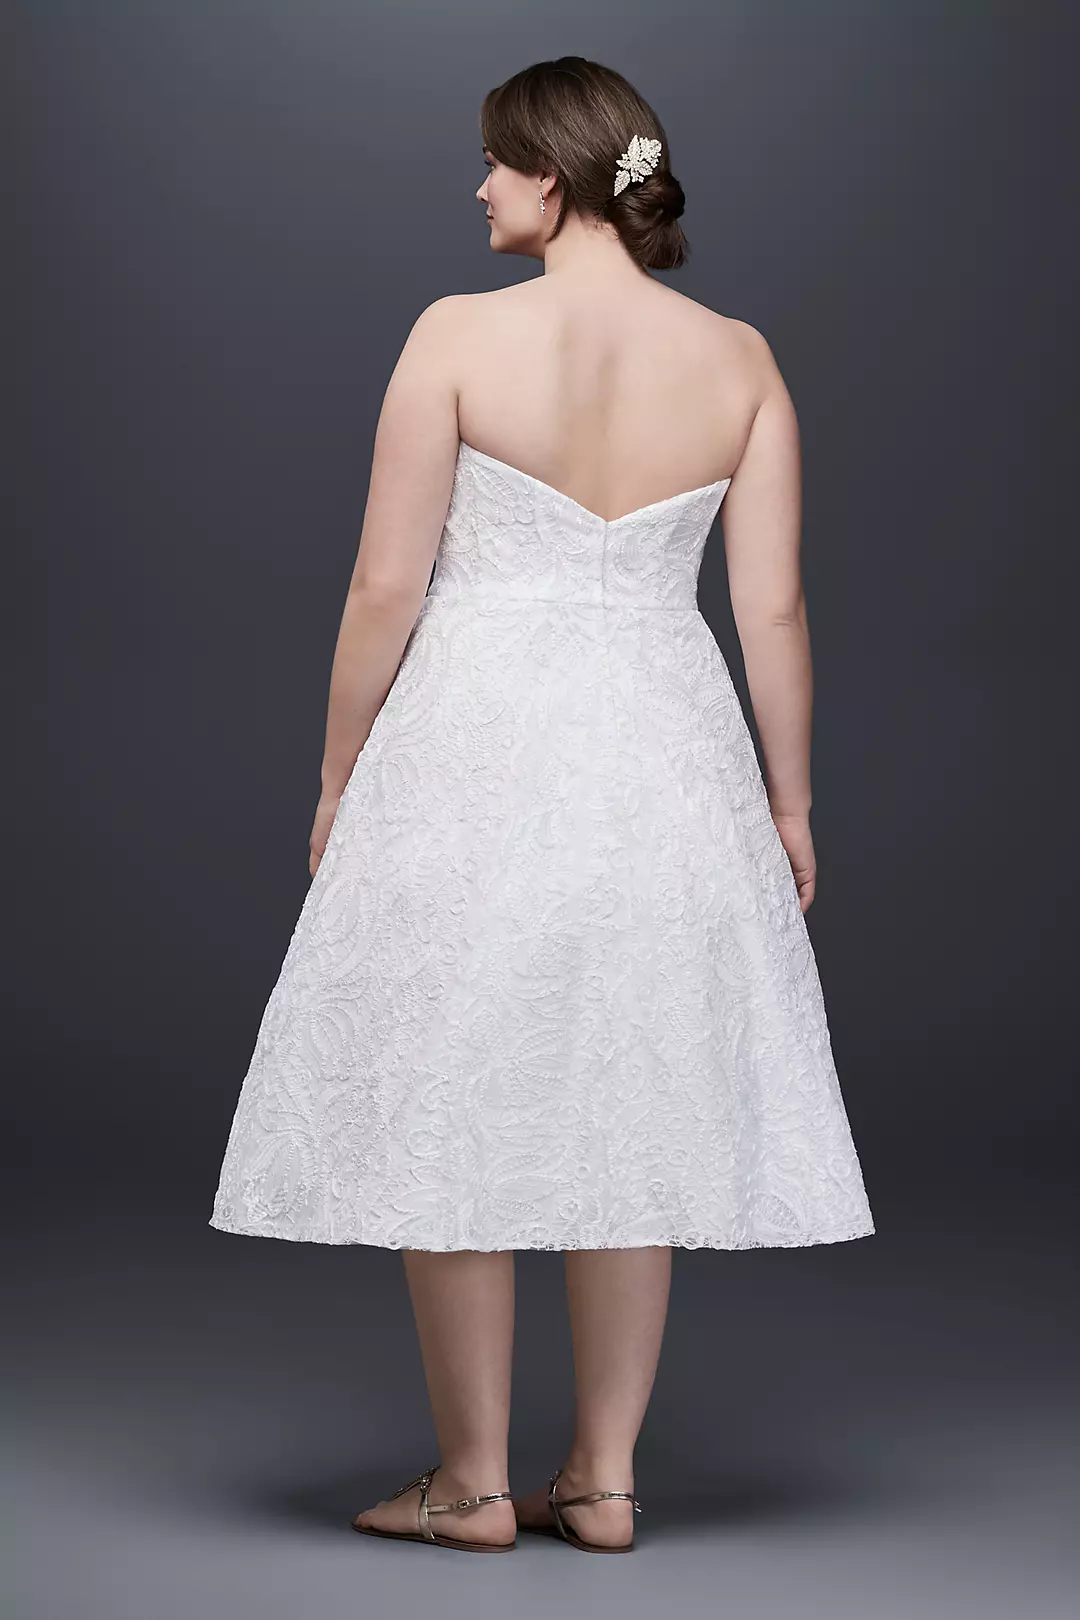 Soutache Lace Tea-Length Wedding Dress Image 2